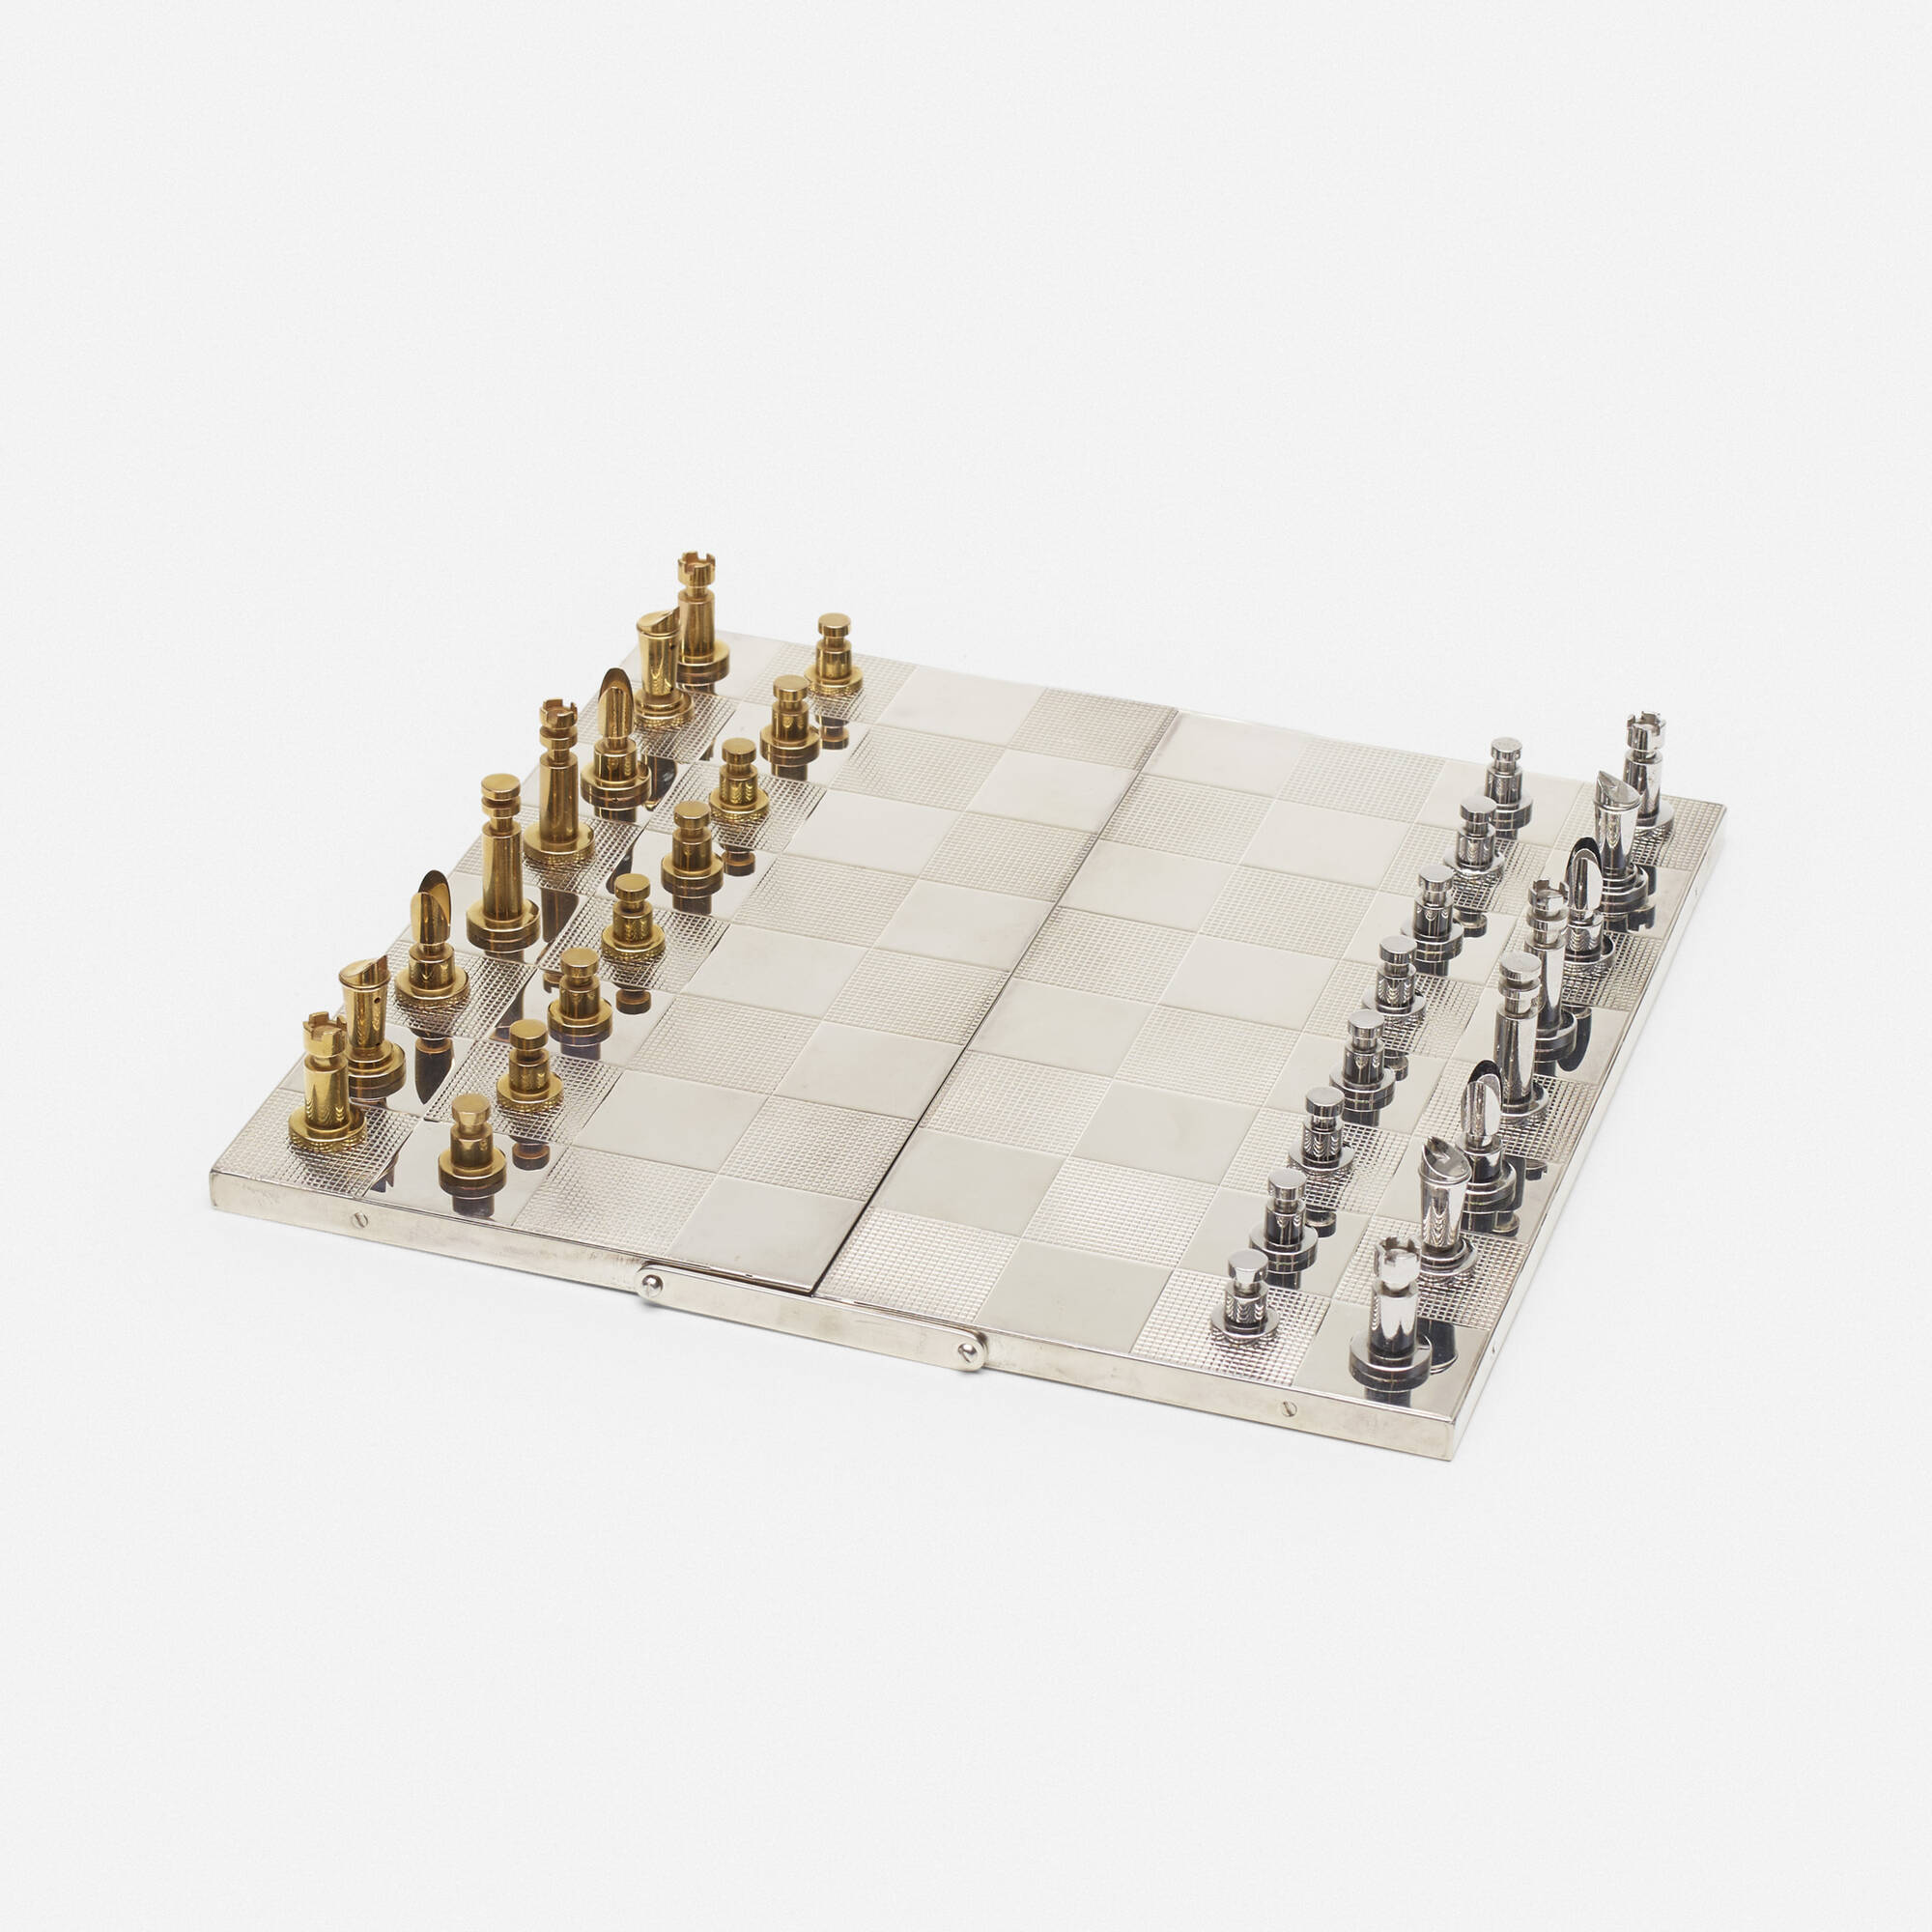 231: HERMÈS, Unique chess set < Important Design, 10 December 2019 <  Auctions